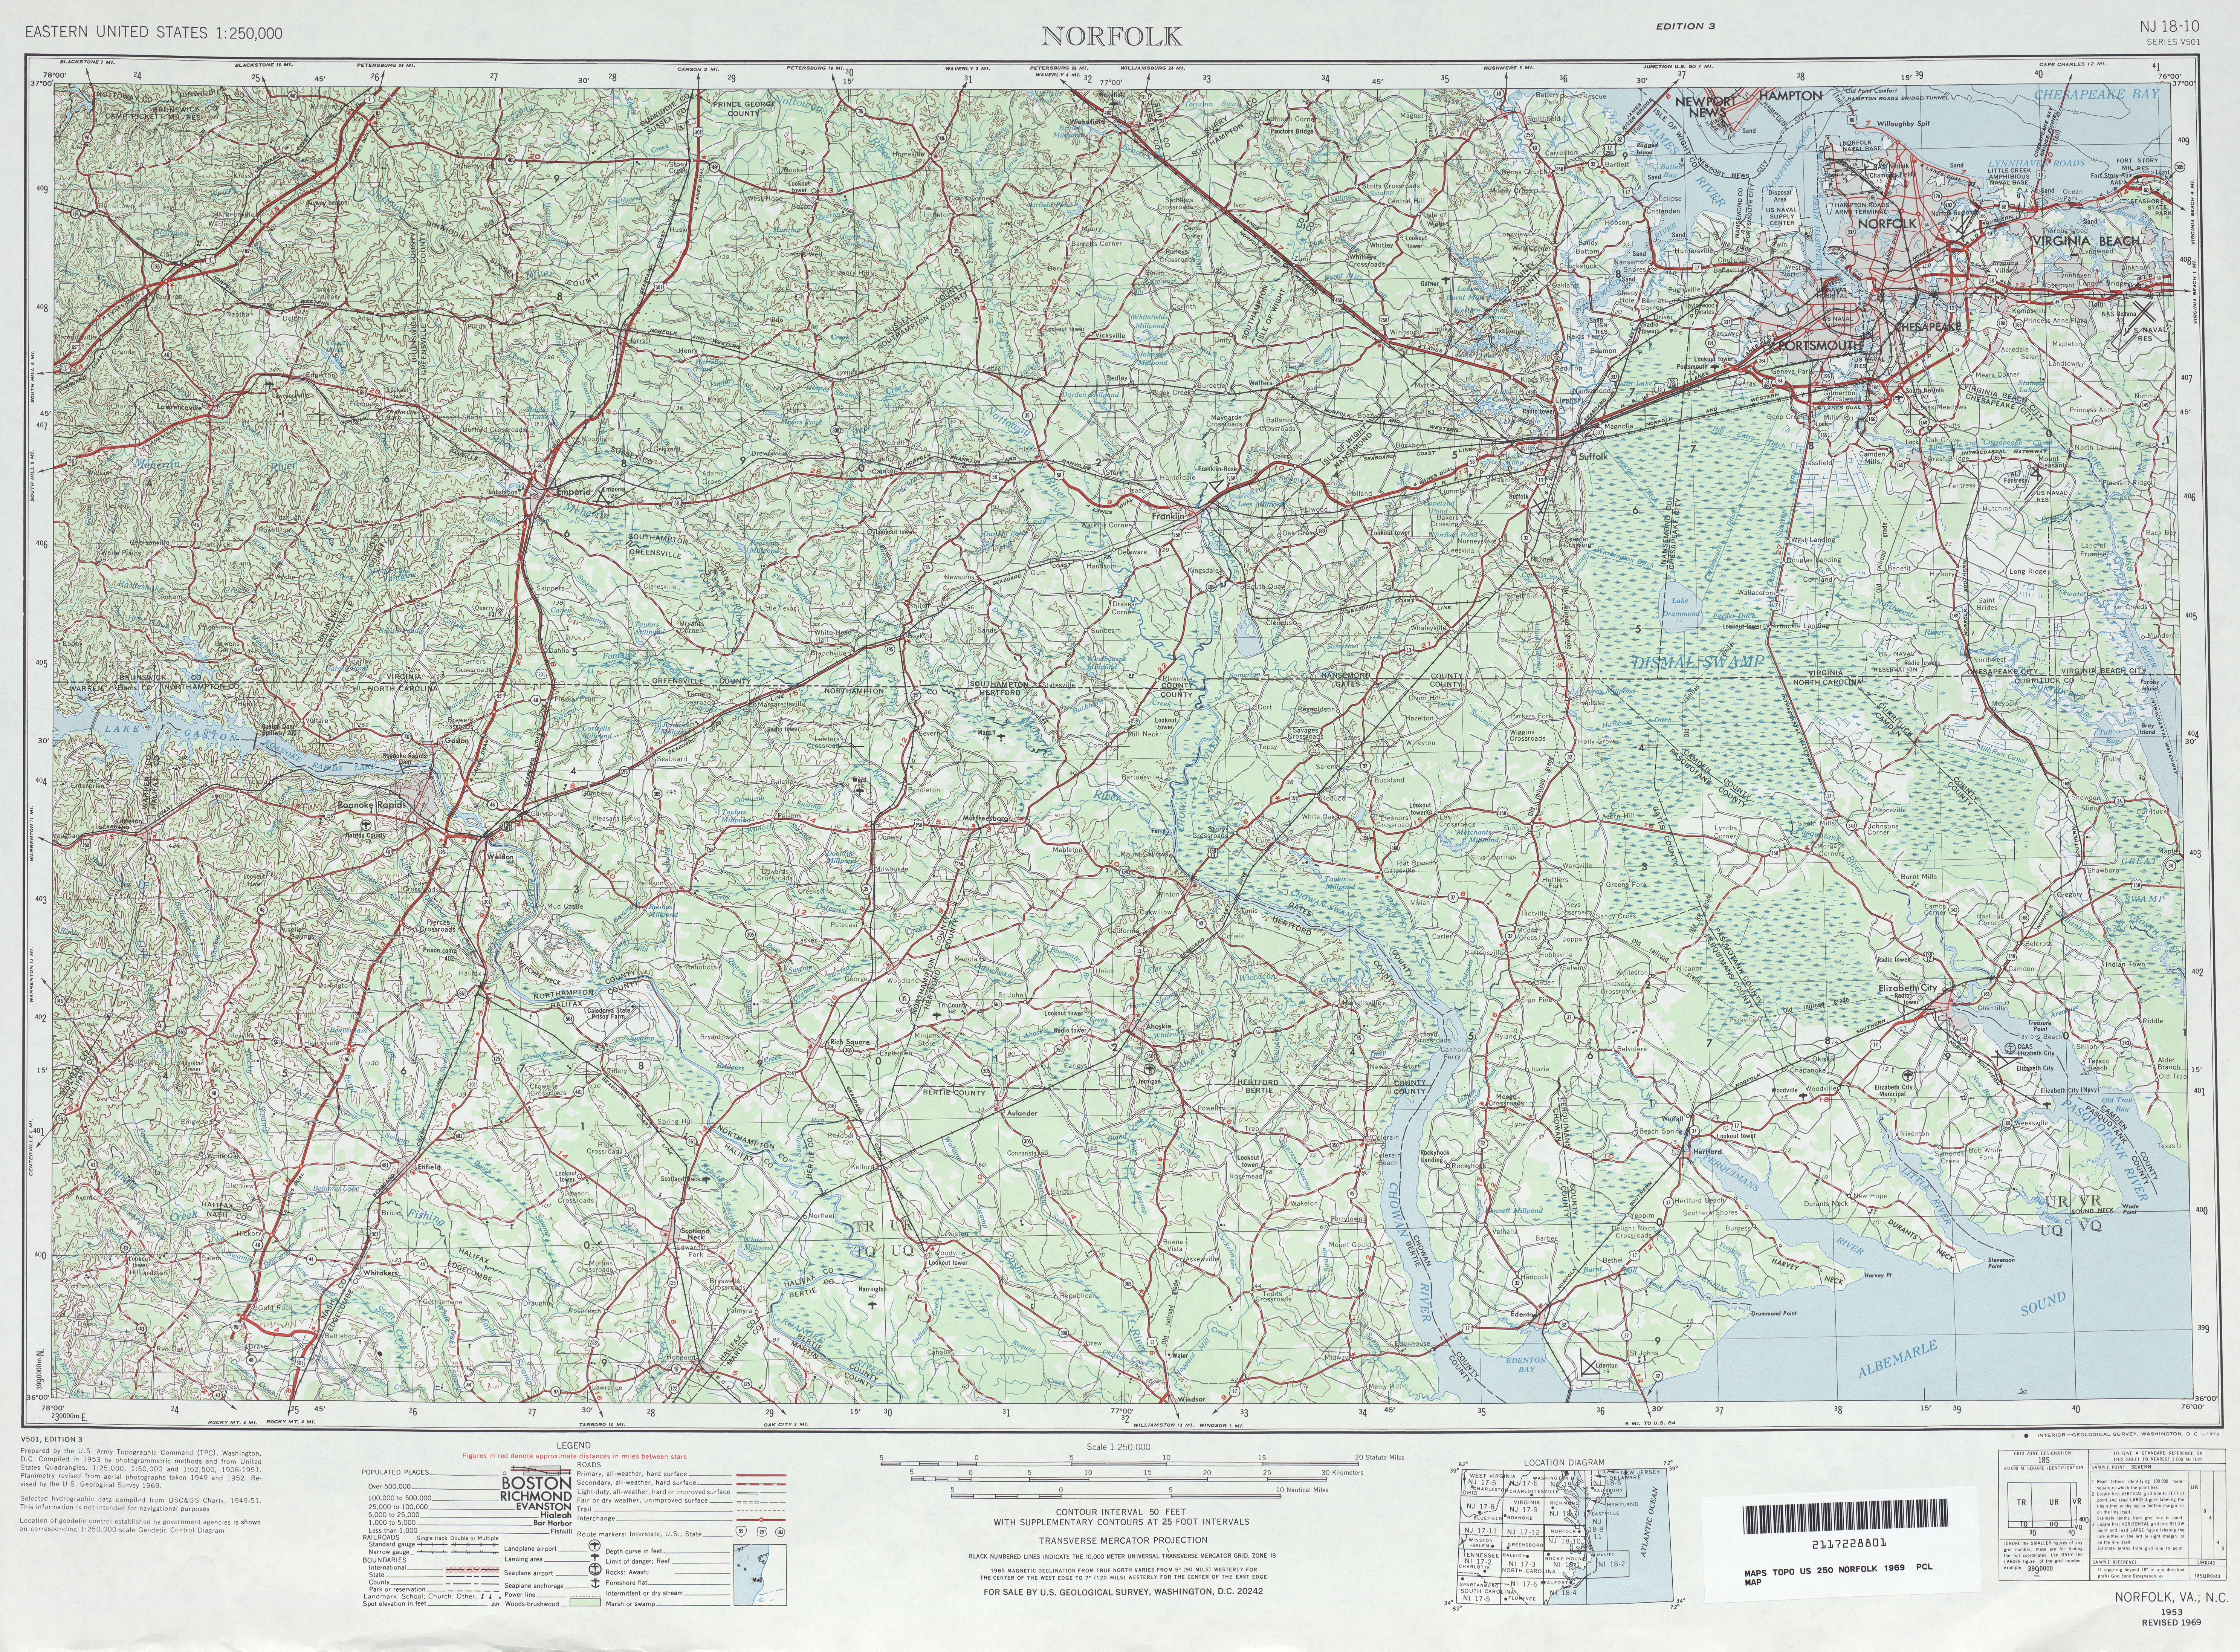 Hoja Norfolk del Mapa Topográfico de los Estados Unidos 1969